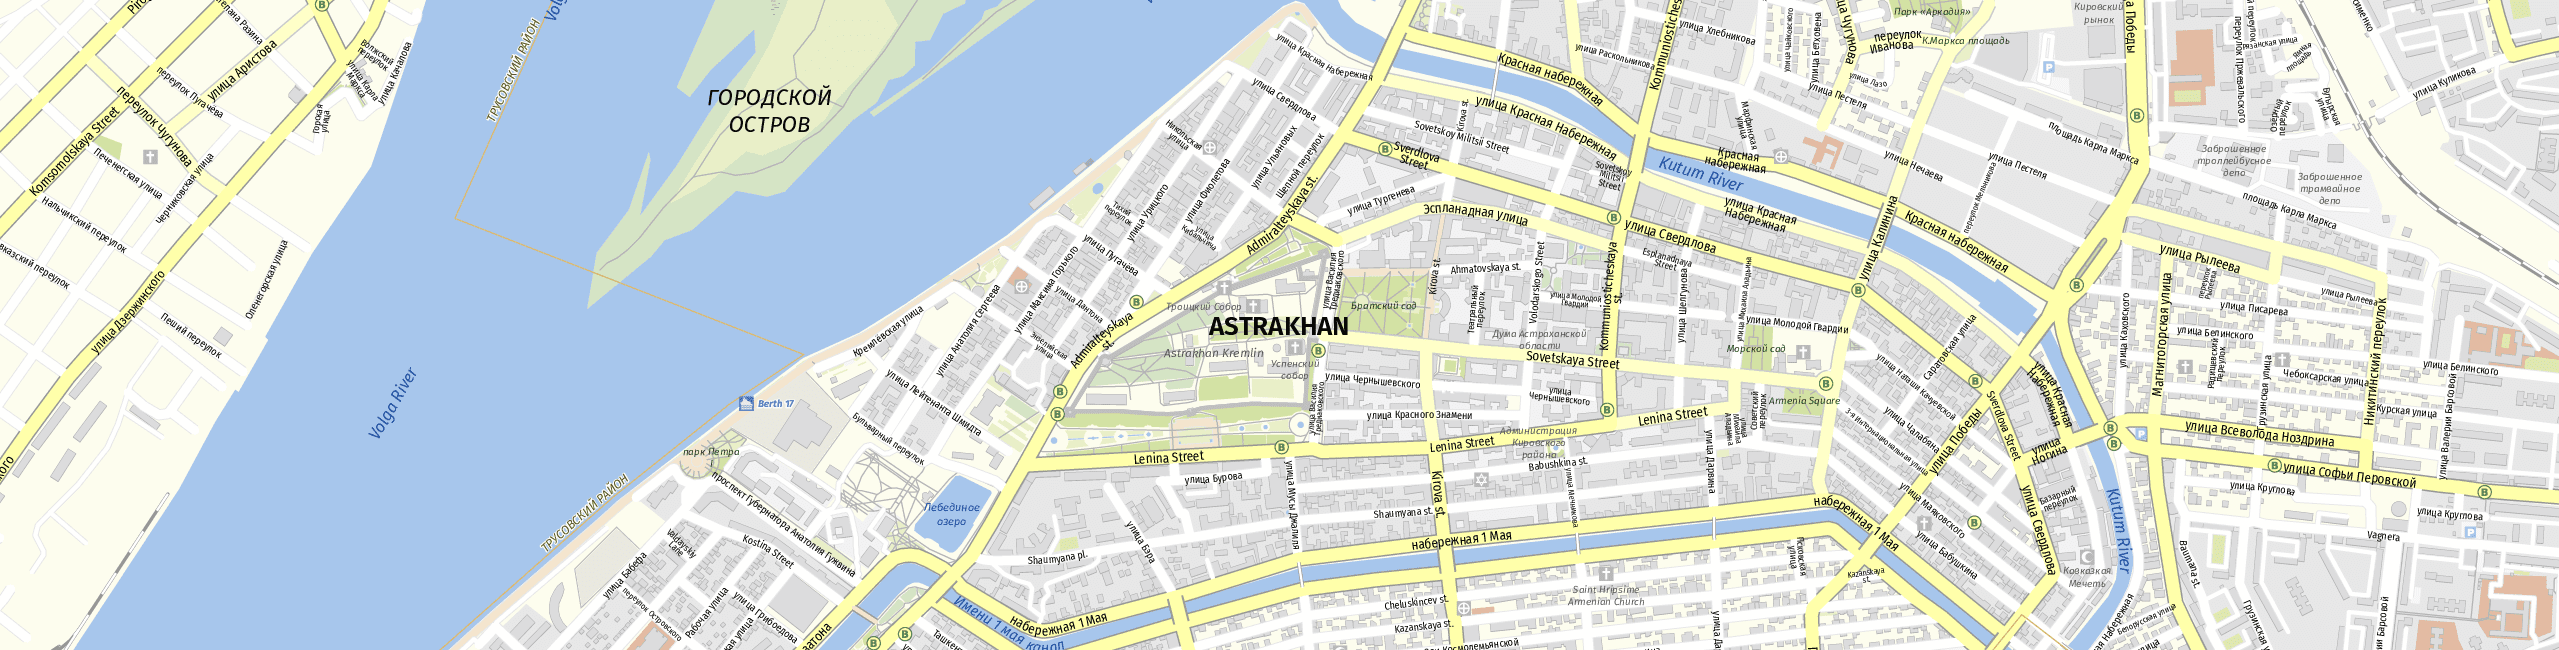 Stadtplan Astrachan zum Downloaden.